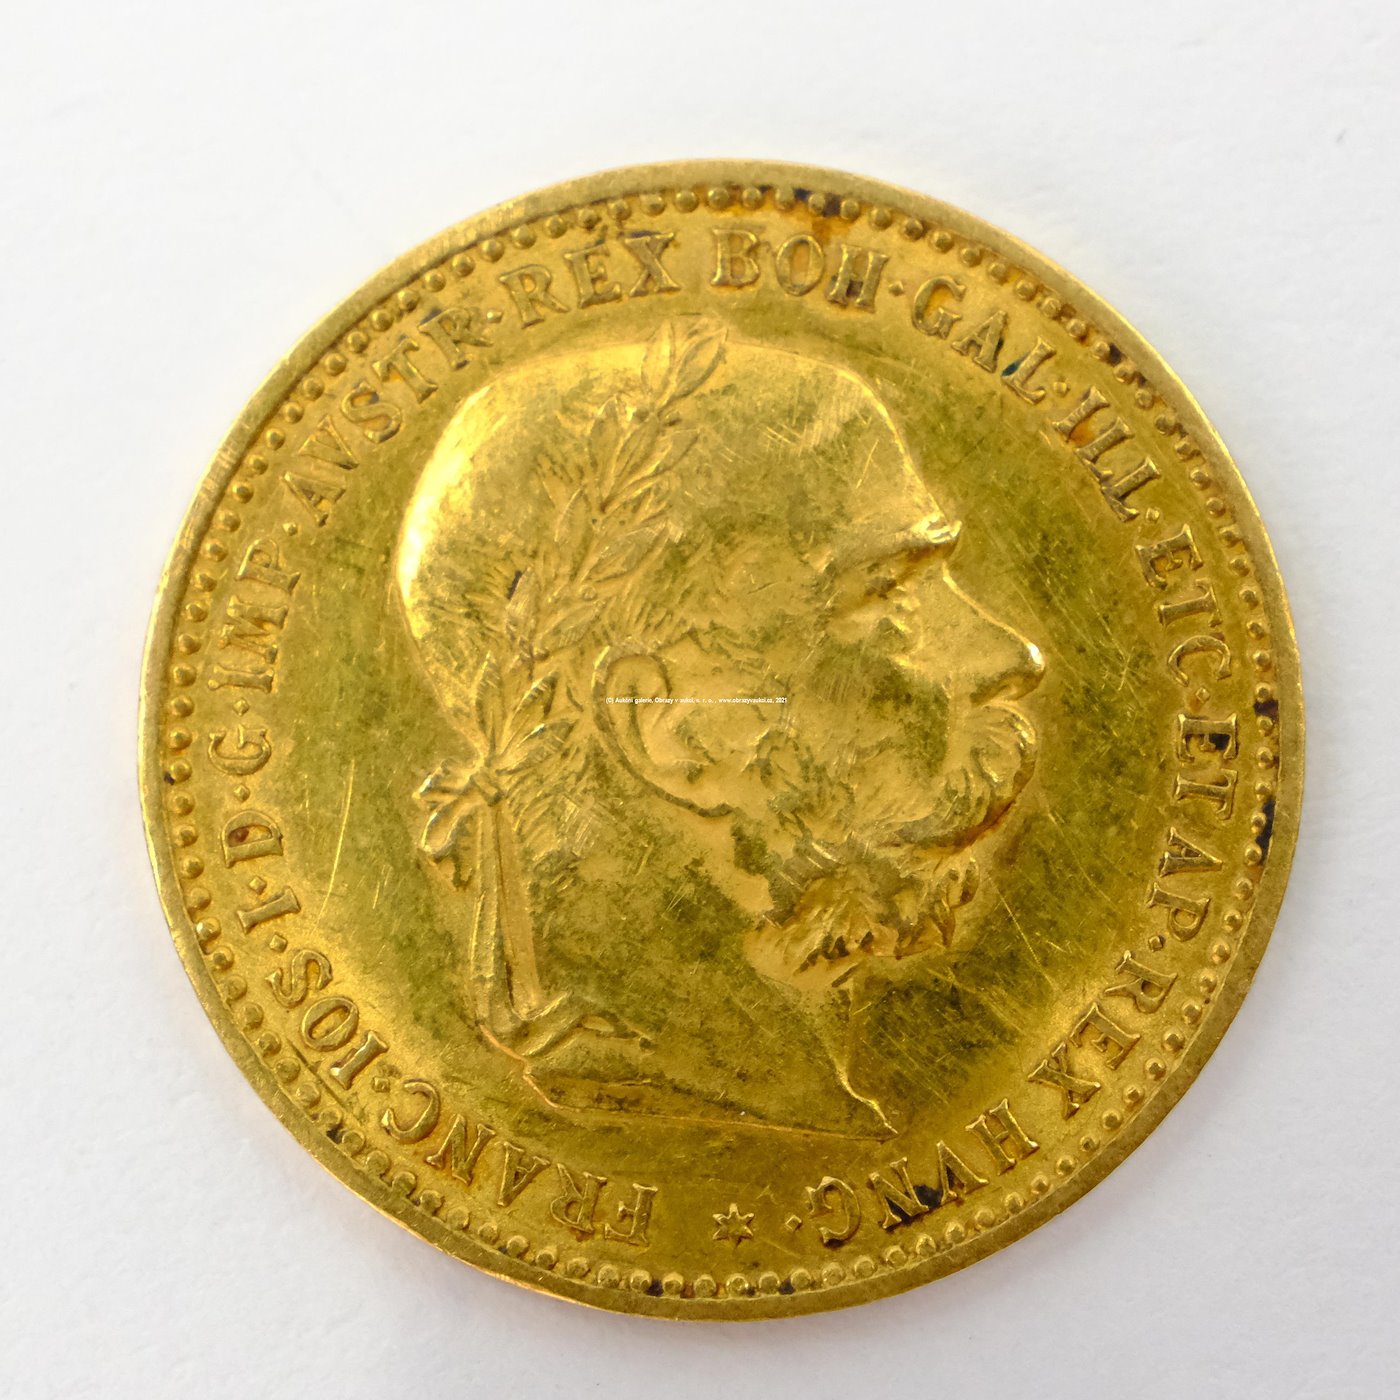 .. - Rakousko Uhersko zlatá 10 Koruna 1905 rakouská. Zlato 900/1000, hrubá hmotnost mince 3,387g